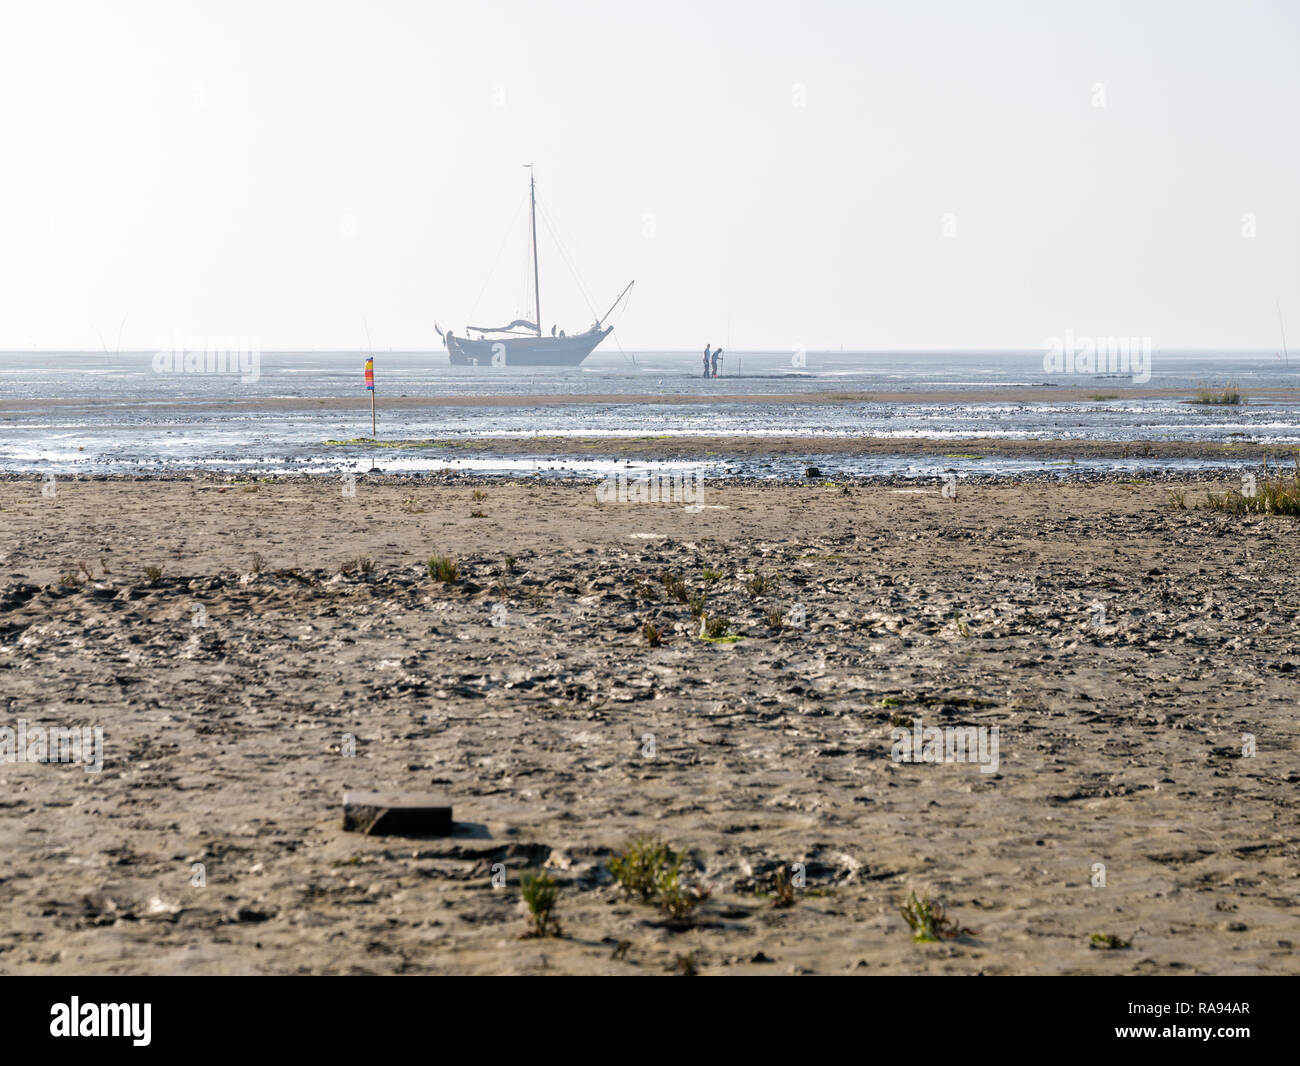 Les personnes à la recherche de mollusques dans des vasières et séché, voilier à marée basse, près de la mer des Wadden frisonnes Ouest île de Schiermonnikoog, Pays-Bas Banque D'Images